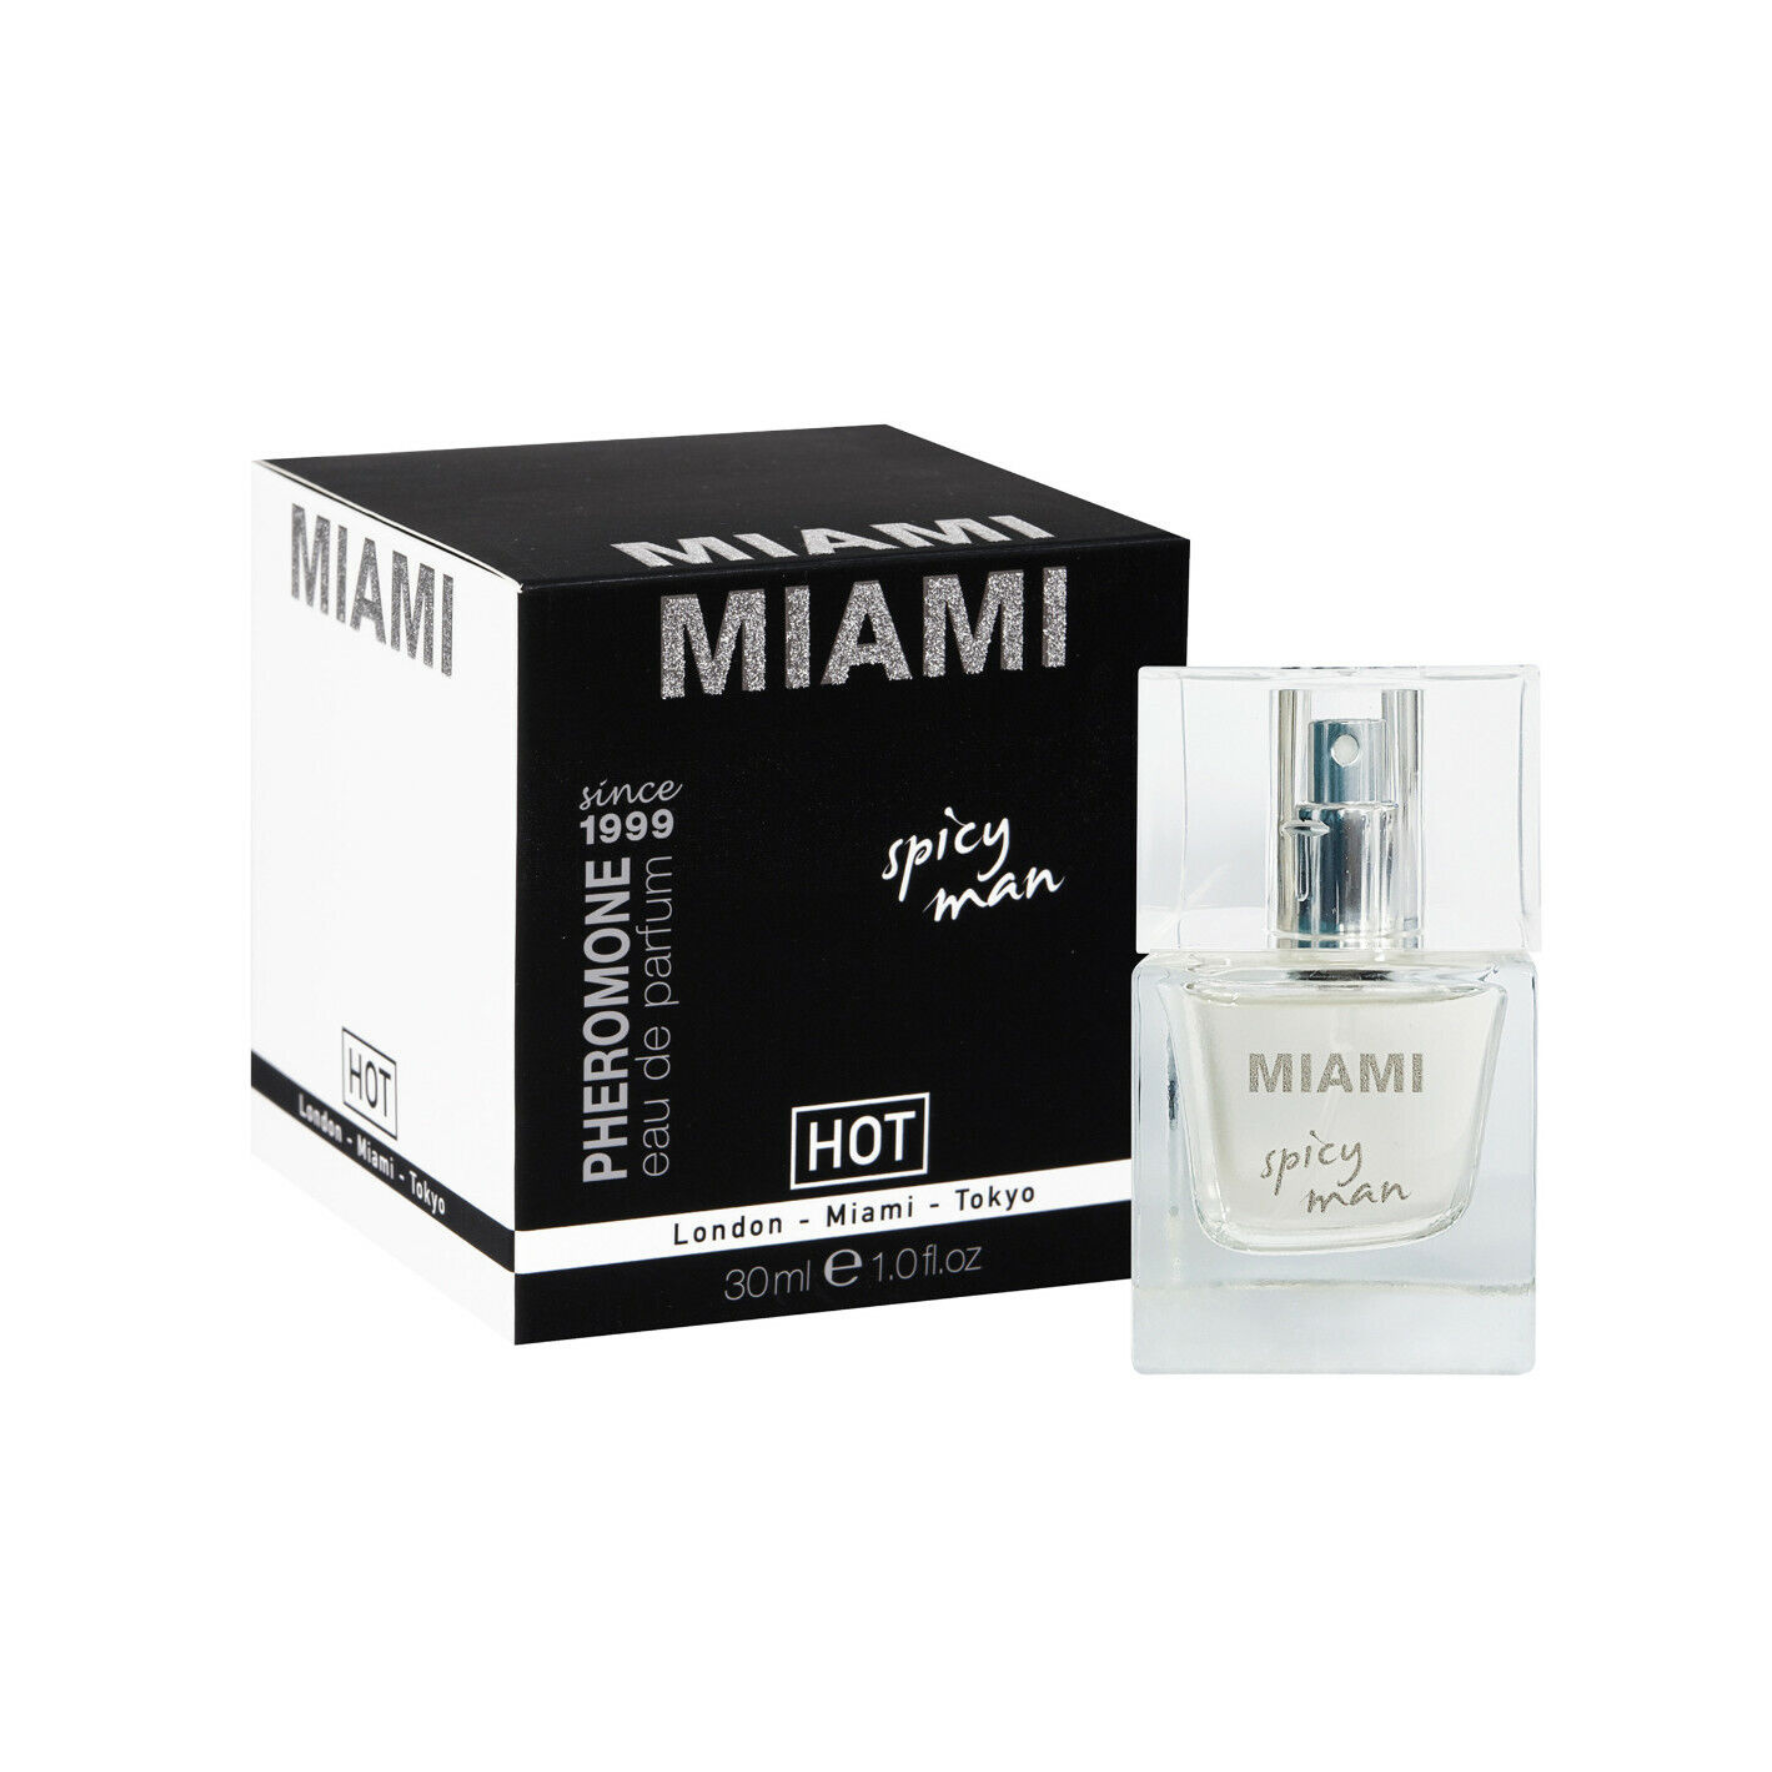 Feromoniniai kvepalai vyrams “HOT Miami Spicy Man” - 30 ml